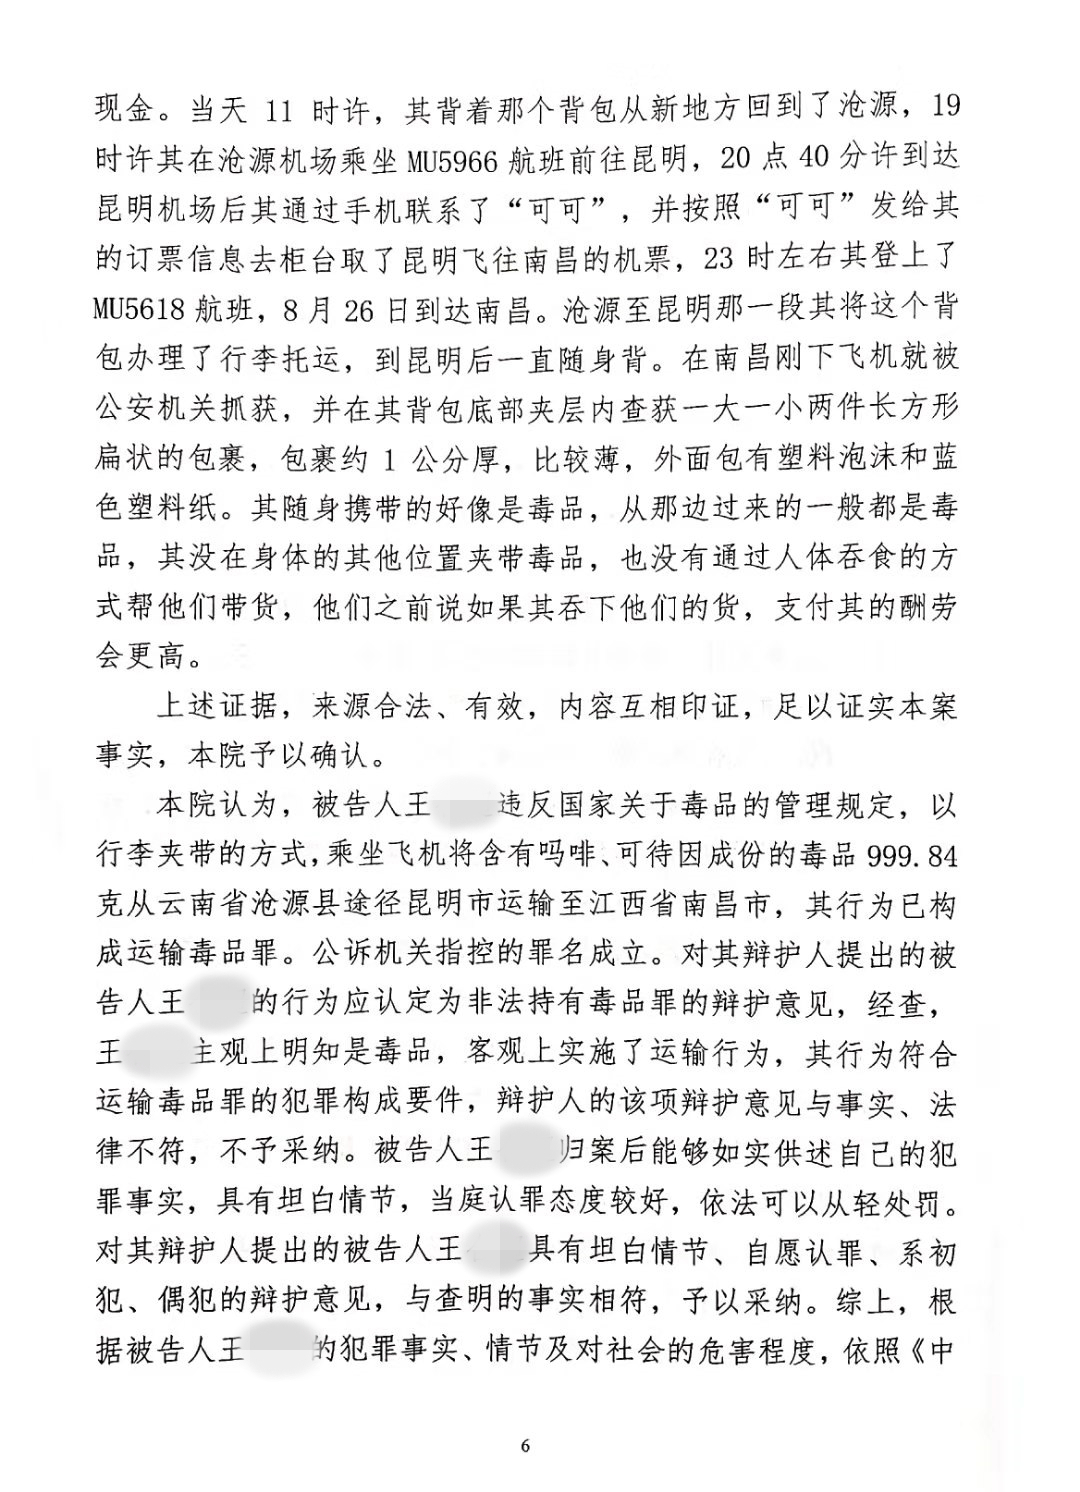 徐浩律师代理运输毒品近1000g当事人获判有期徒刑